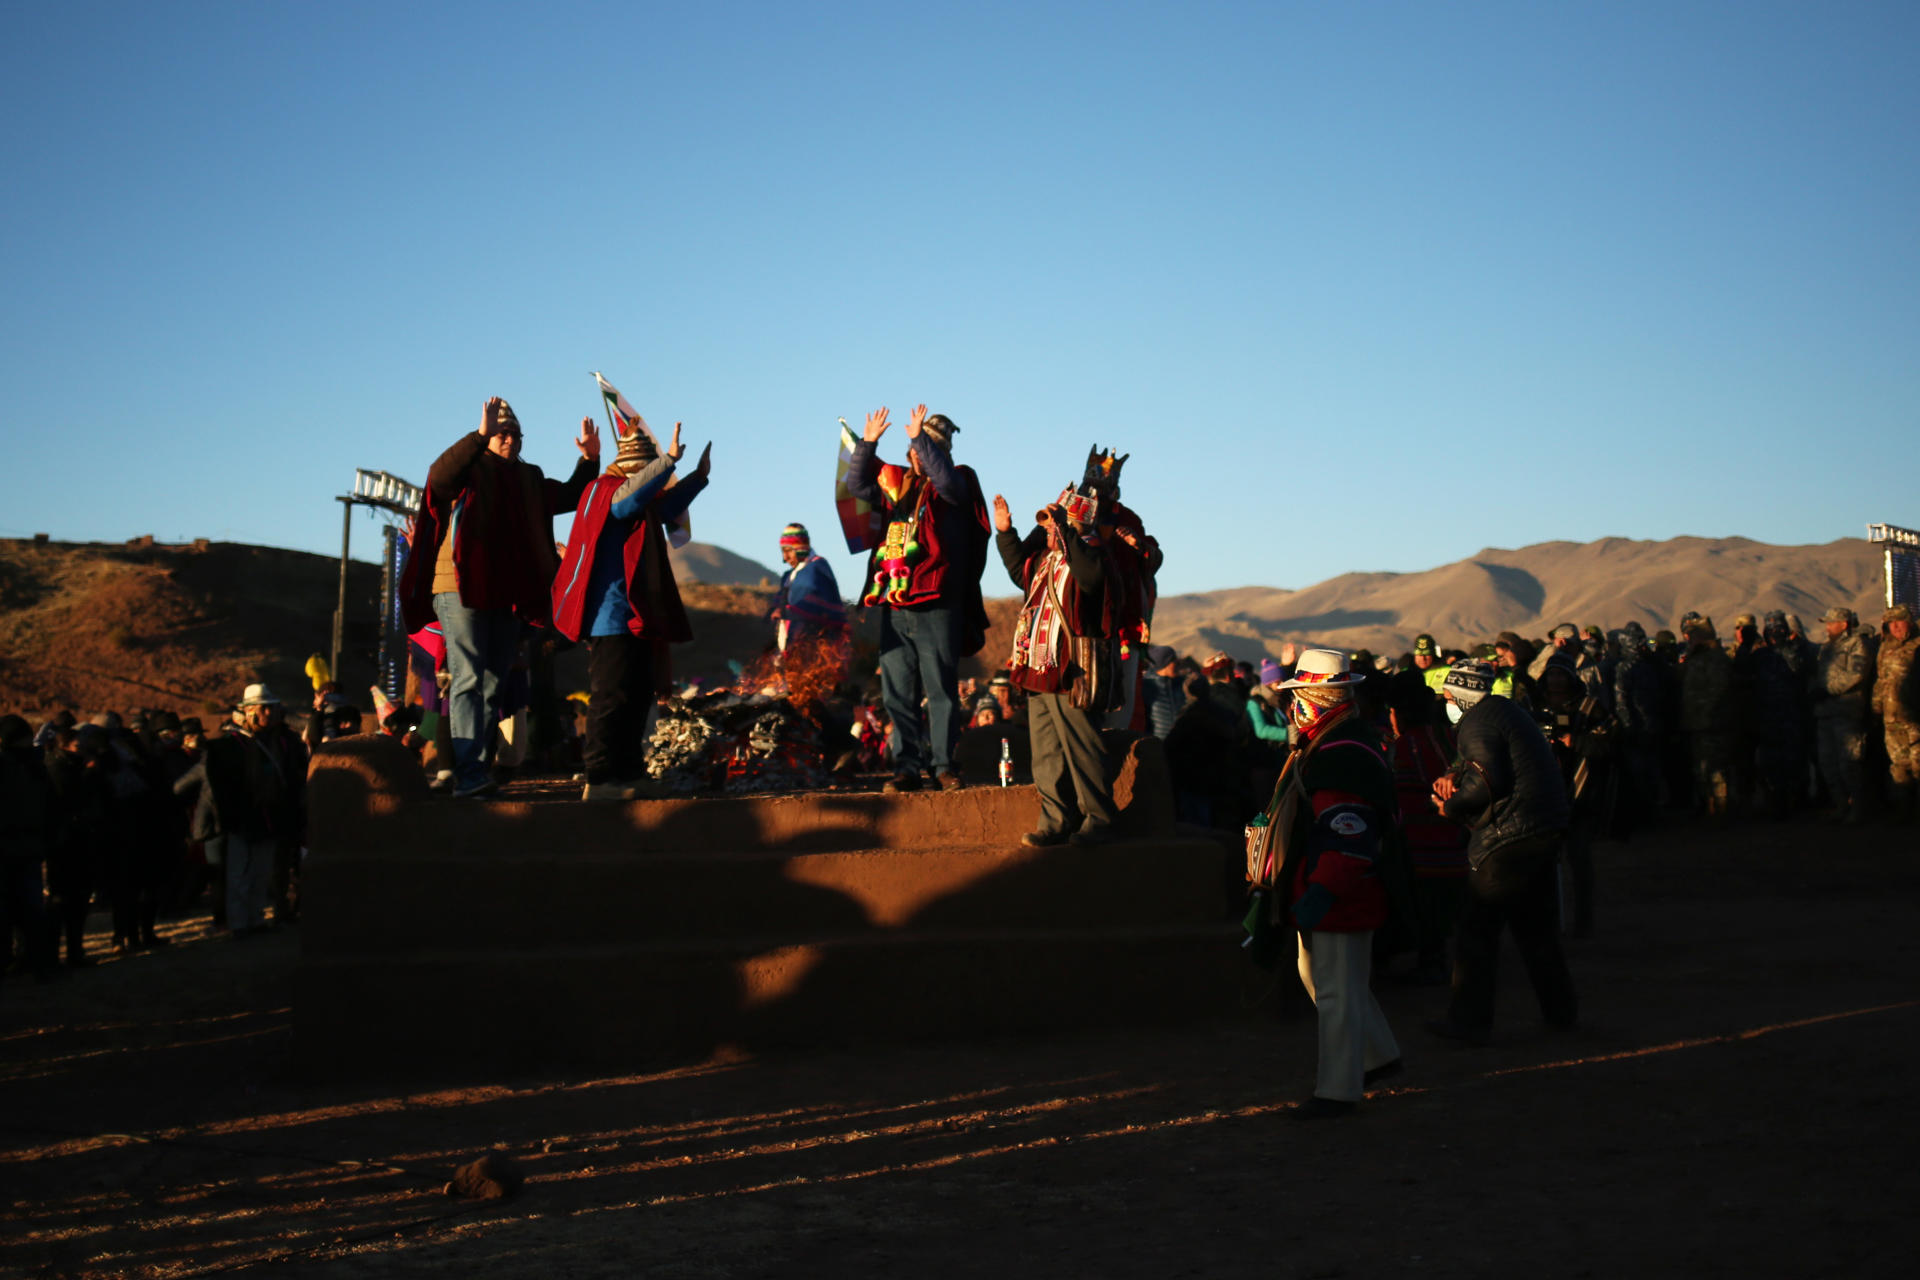 Líderes y chamanes aymaras reciben hoy los rayos del sol durante la celebración del año nuevo andino amazónico chaqueño 5531, en la ciudadela prehispánica de Tiahuanaco (Bolivia). EFE/Luis Gandarillas